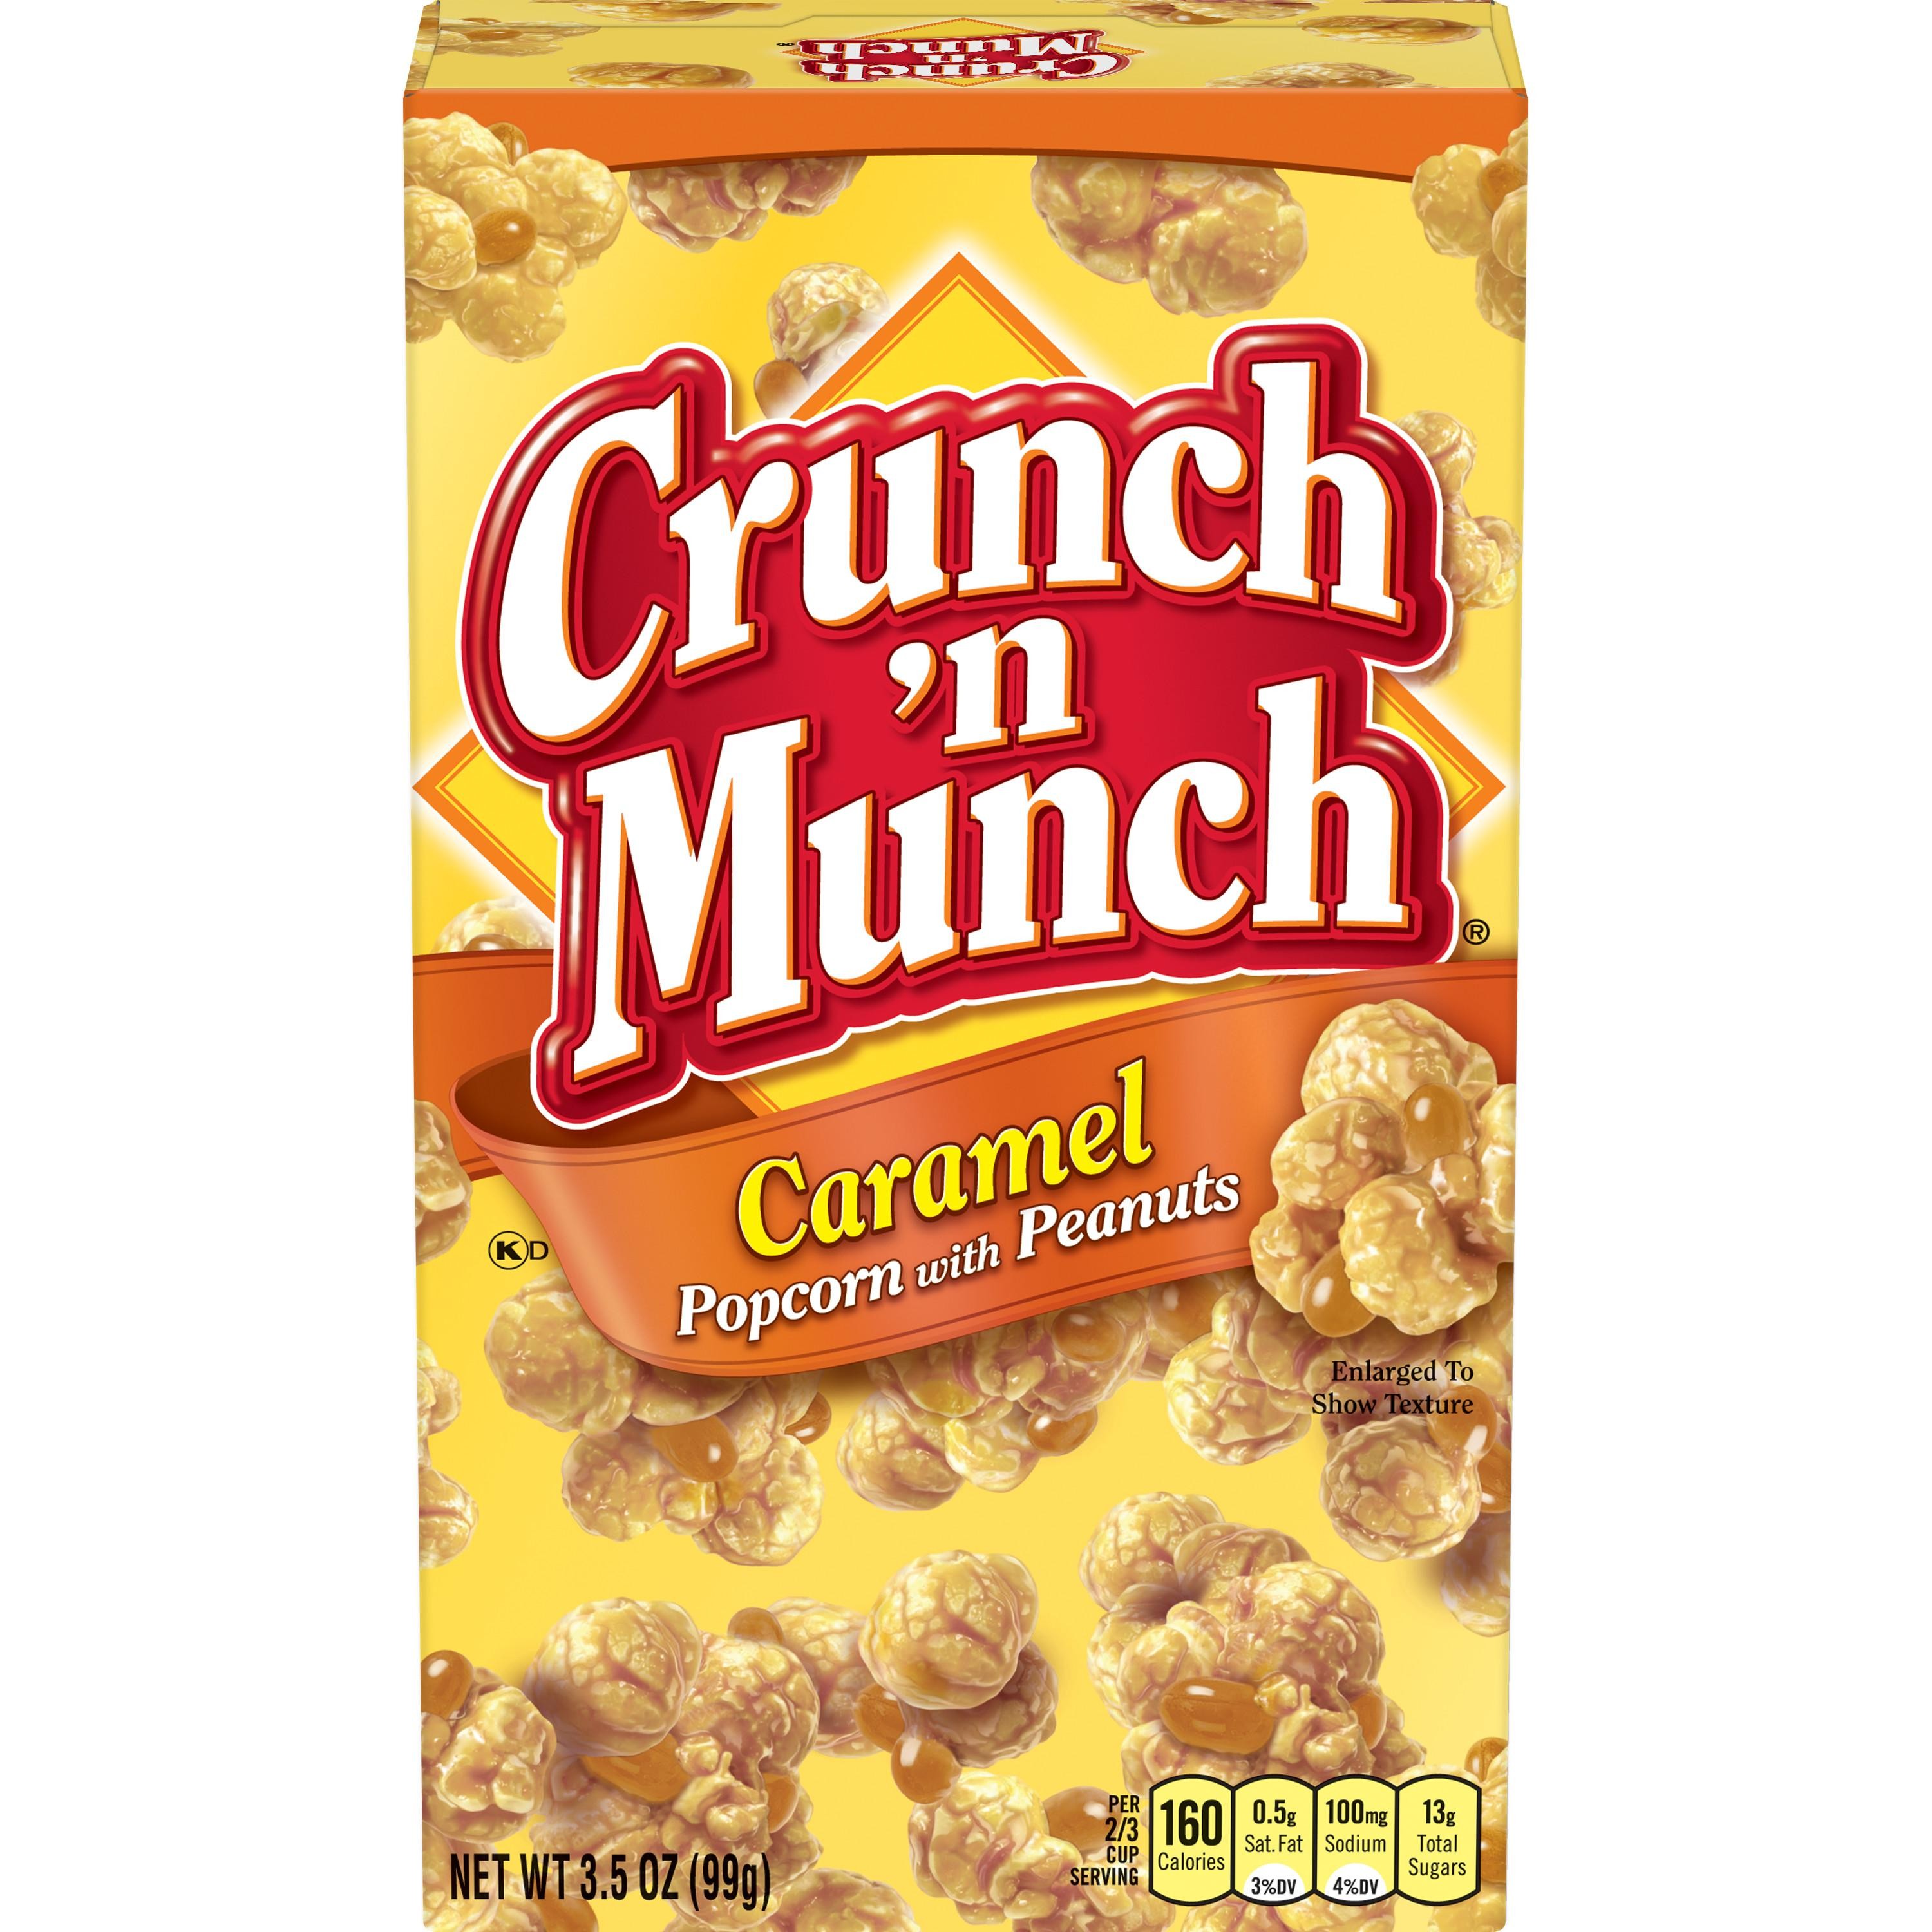 Crunch 'n Munch Popcorn with Peanuts Caramel - 3.5 Oz